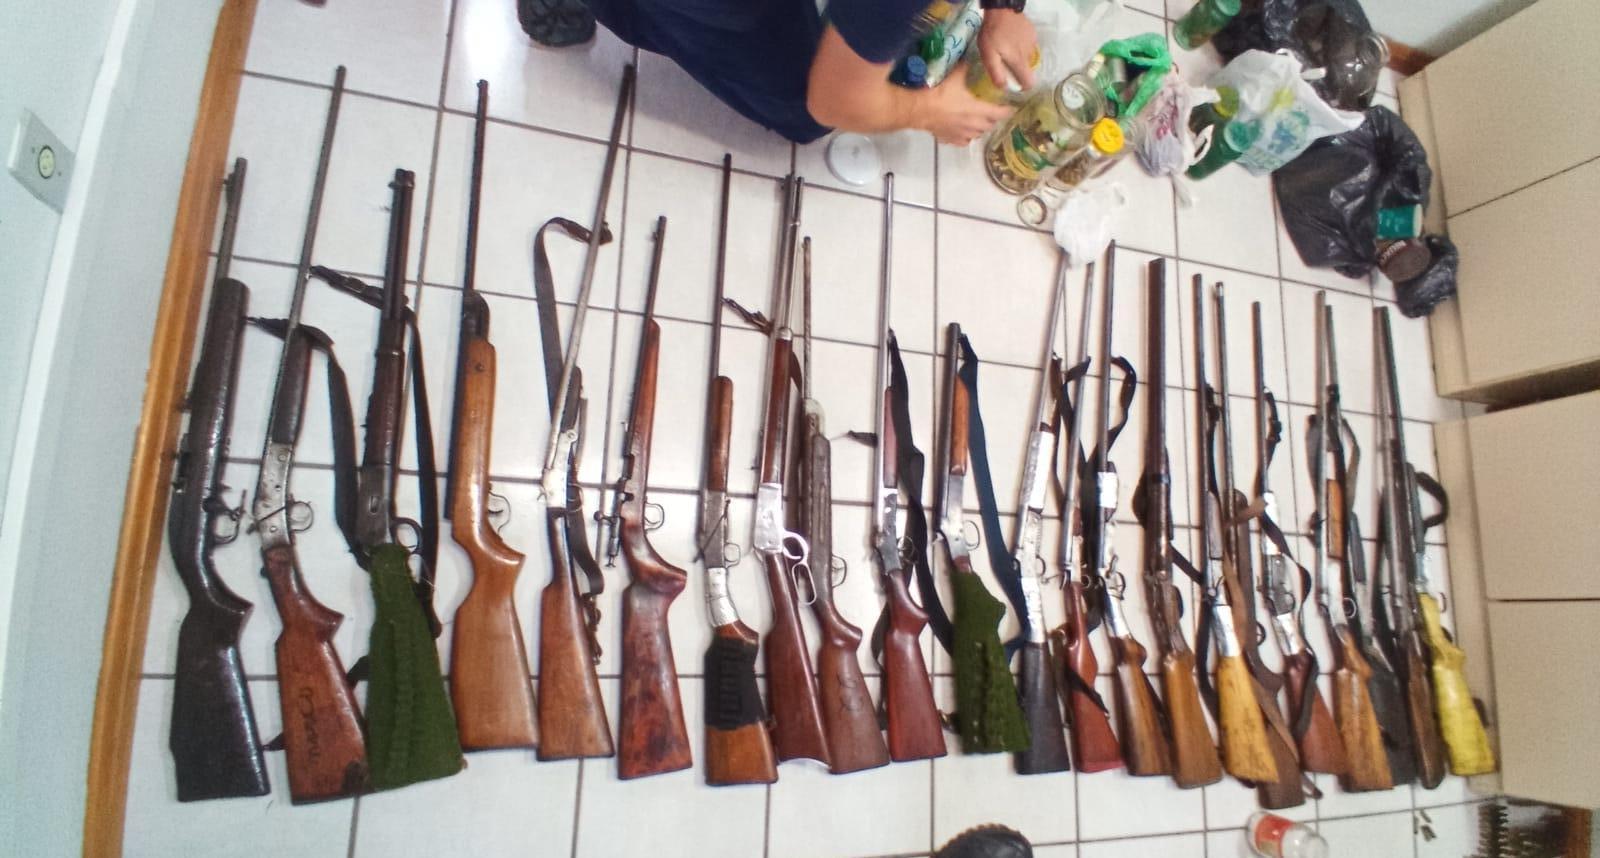 Arsenal de armas e munições é aprendido pela Polícia Civil no Alto Vale